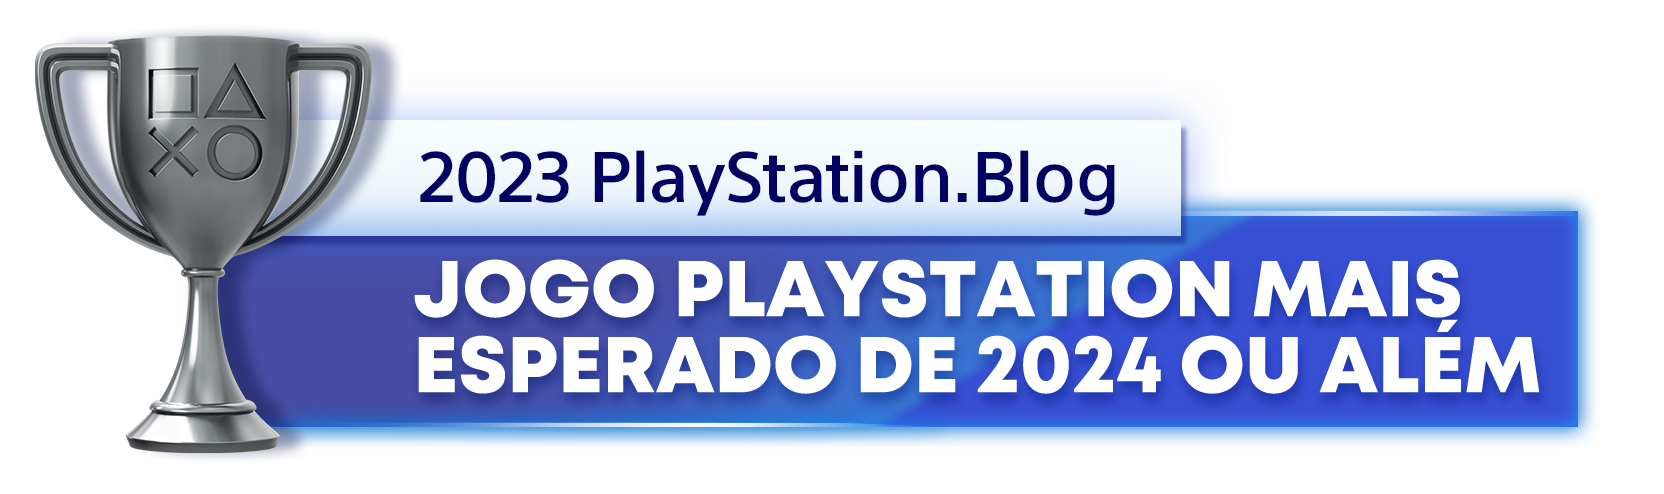  "Troféu de Prata para o vencedor da categoria Jogo PlayStation mais esperado de 2024 ou além, do ano de 2023 do Playstation Blog"